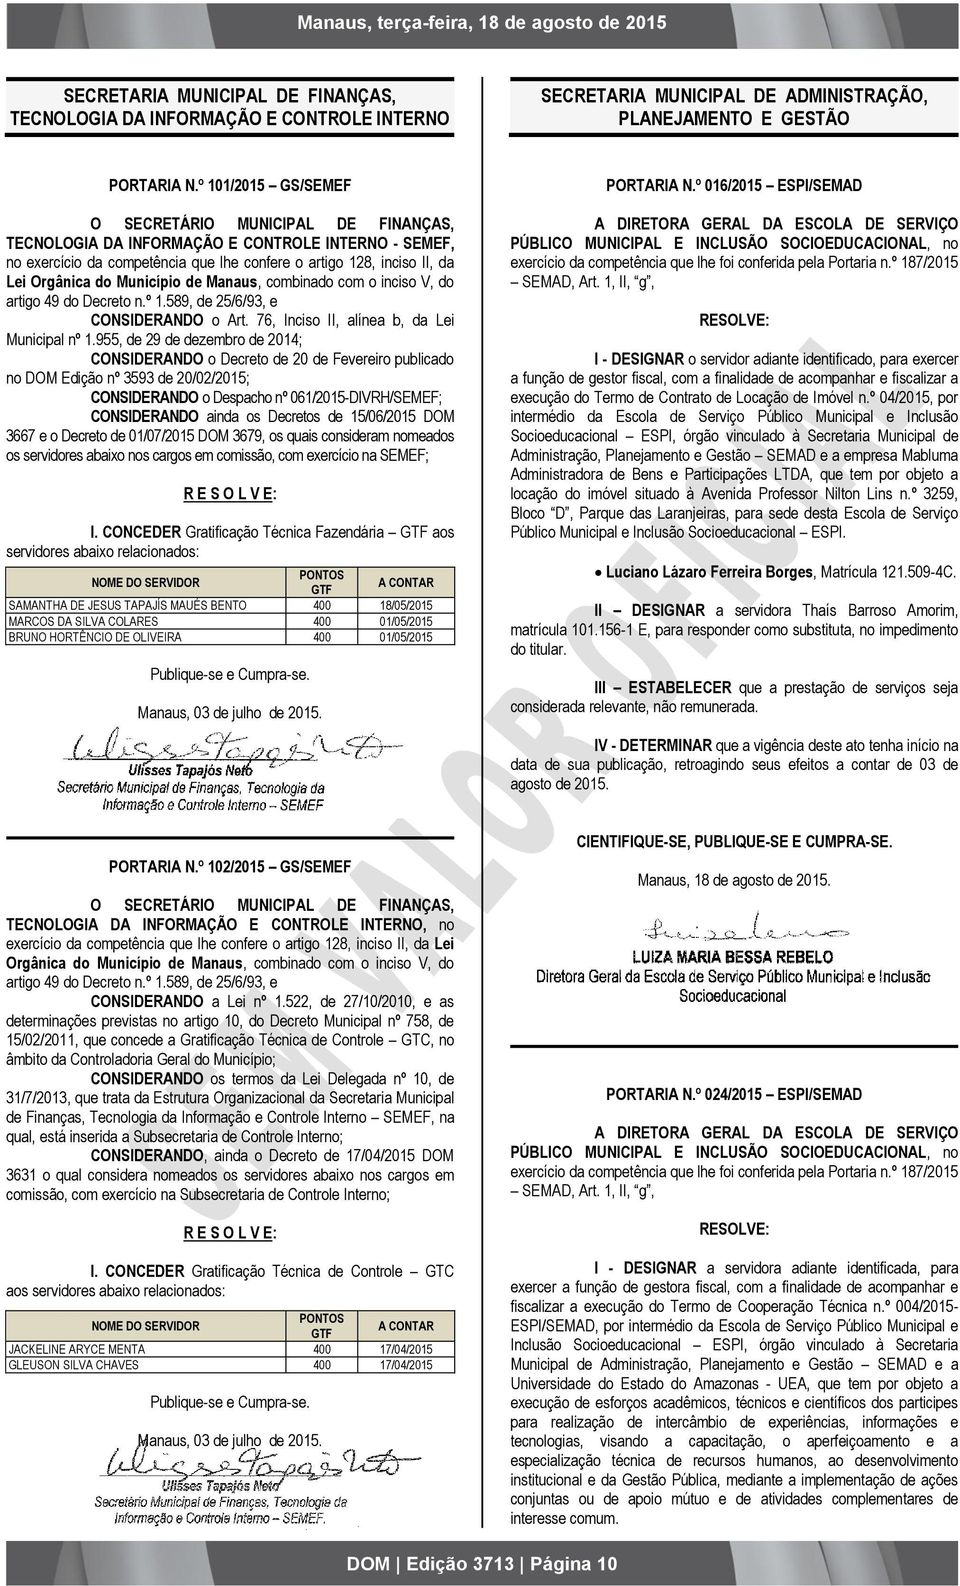 Município de Manaus, combinado com o inciso V, do artigo 49 do Decreto n.º 1.589, de 25/6/93, e CONSIDERANDO o Art. 76, Inciso II, alínea b, da Lei Municipal nº 1.